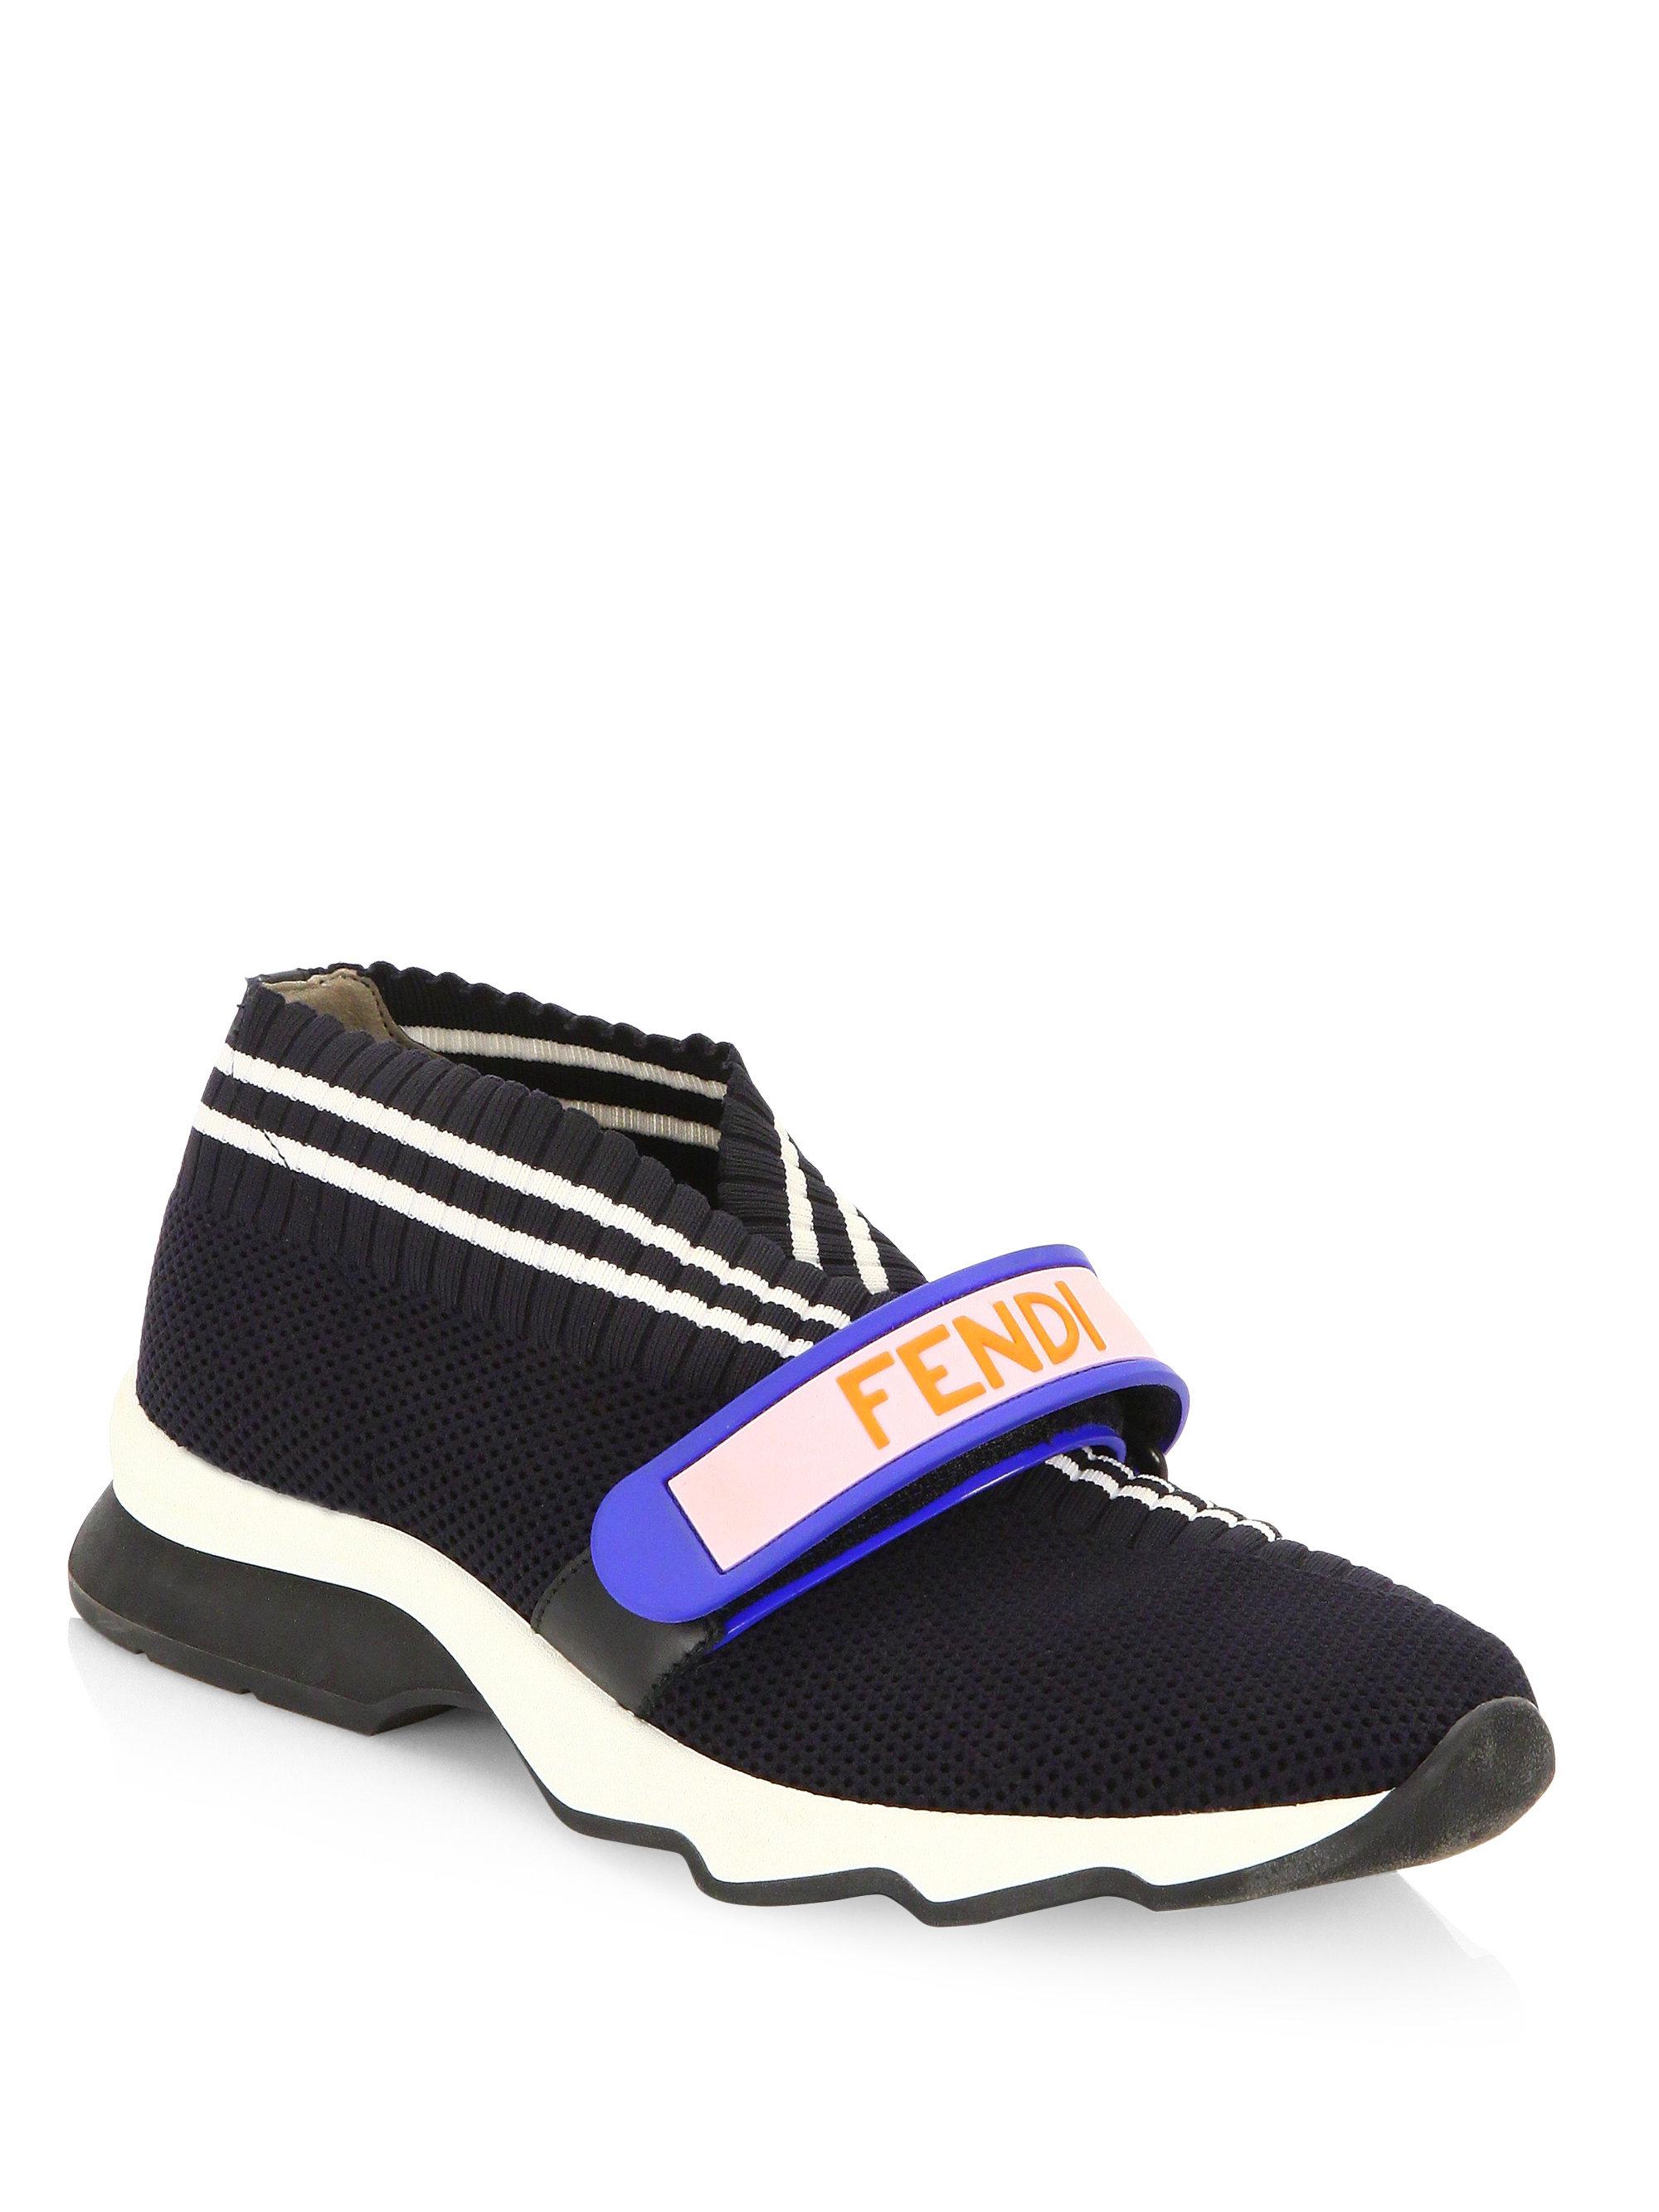 Fendi Leather Rockoko Knit Sneakers in Black - Lyst